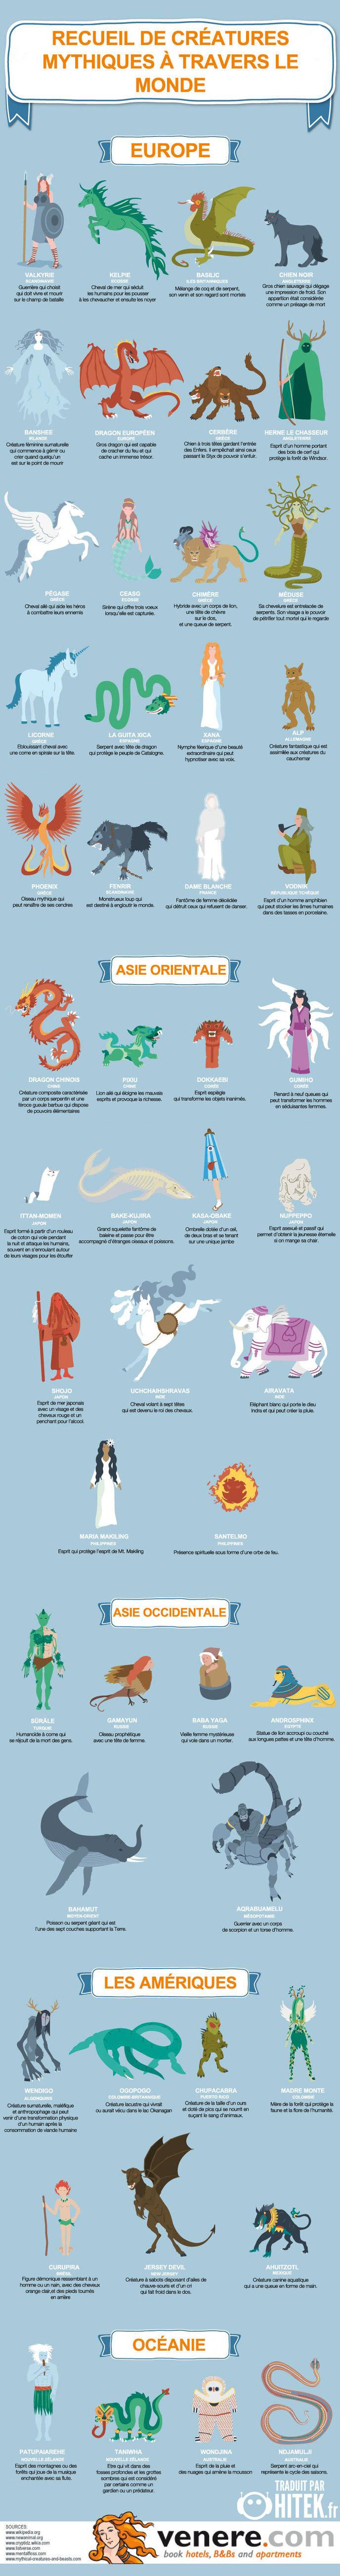 Infographie des nombreuses créatures mythiques dans le monde